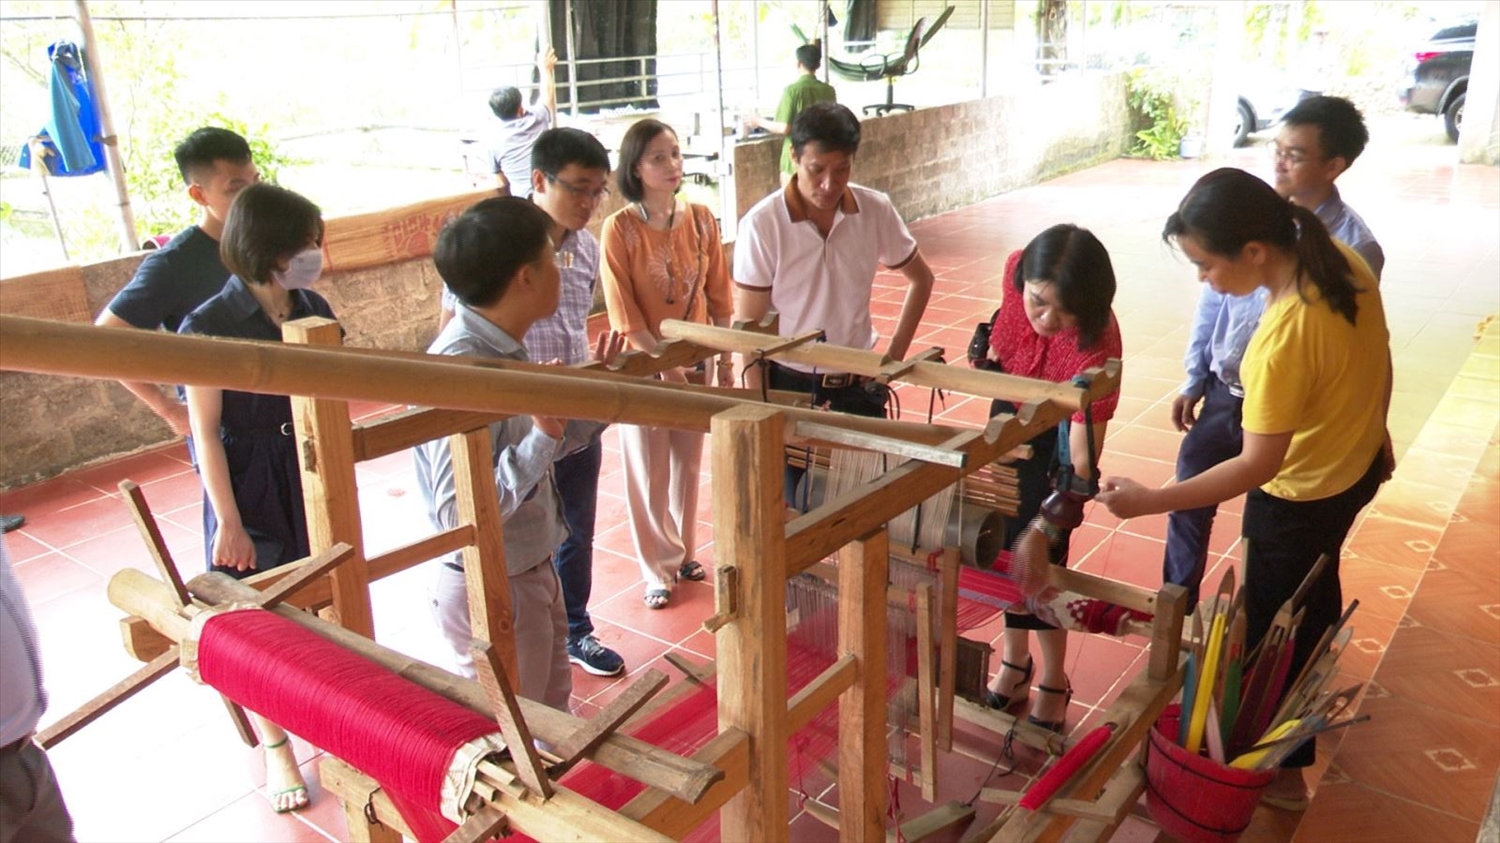 Đoàn công tác của Cục Kinh tế hợp tác và Phát triển nông thôn đã có chuyến khảo sát mô hình Bảo tồn và phát triển làng nghề truyền thống tại Lâm Bình cuối tháng 10/2022. 9Ảnh: lambinh.gov.vn)